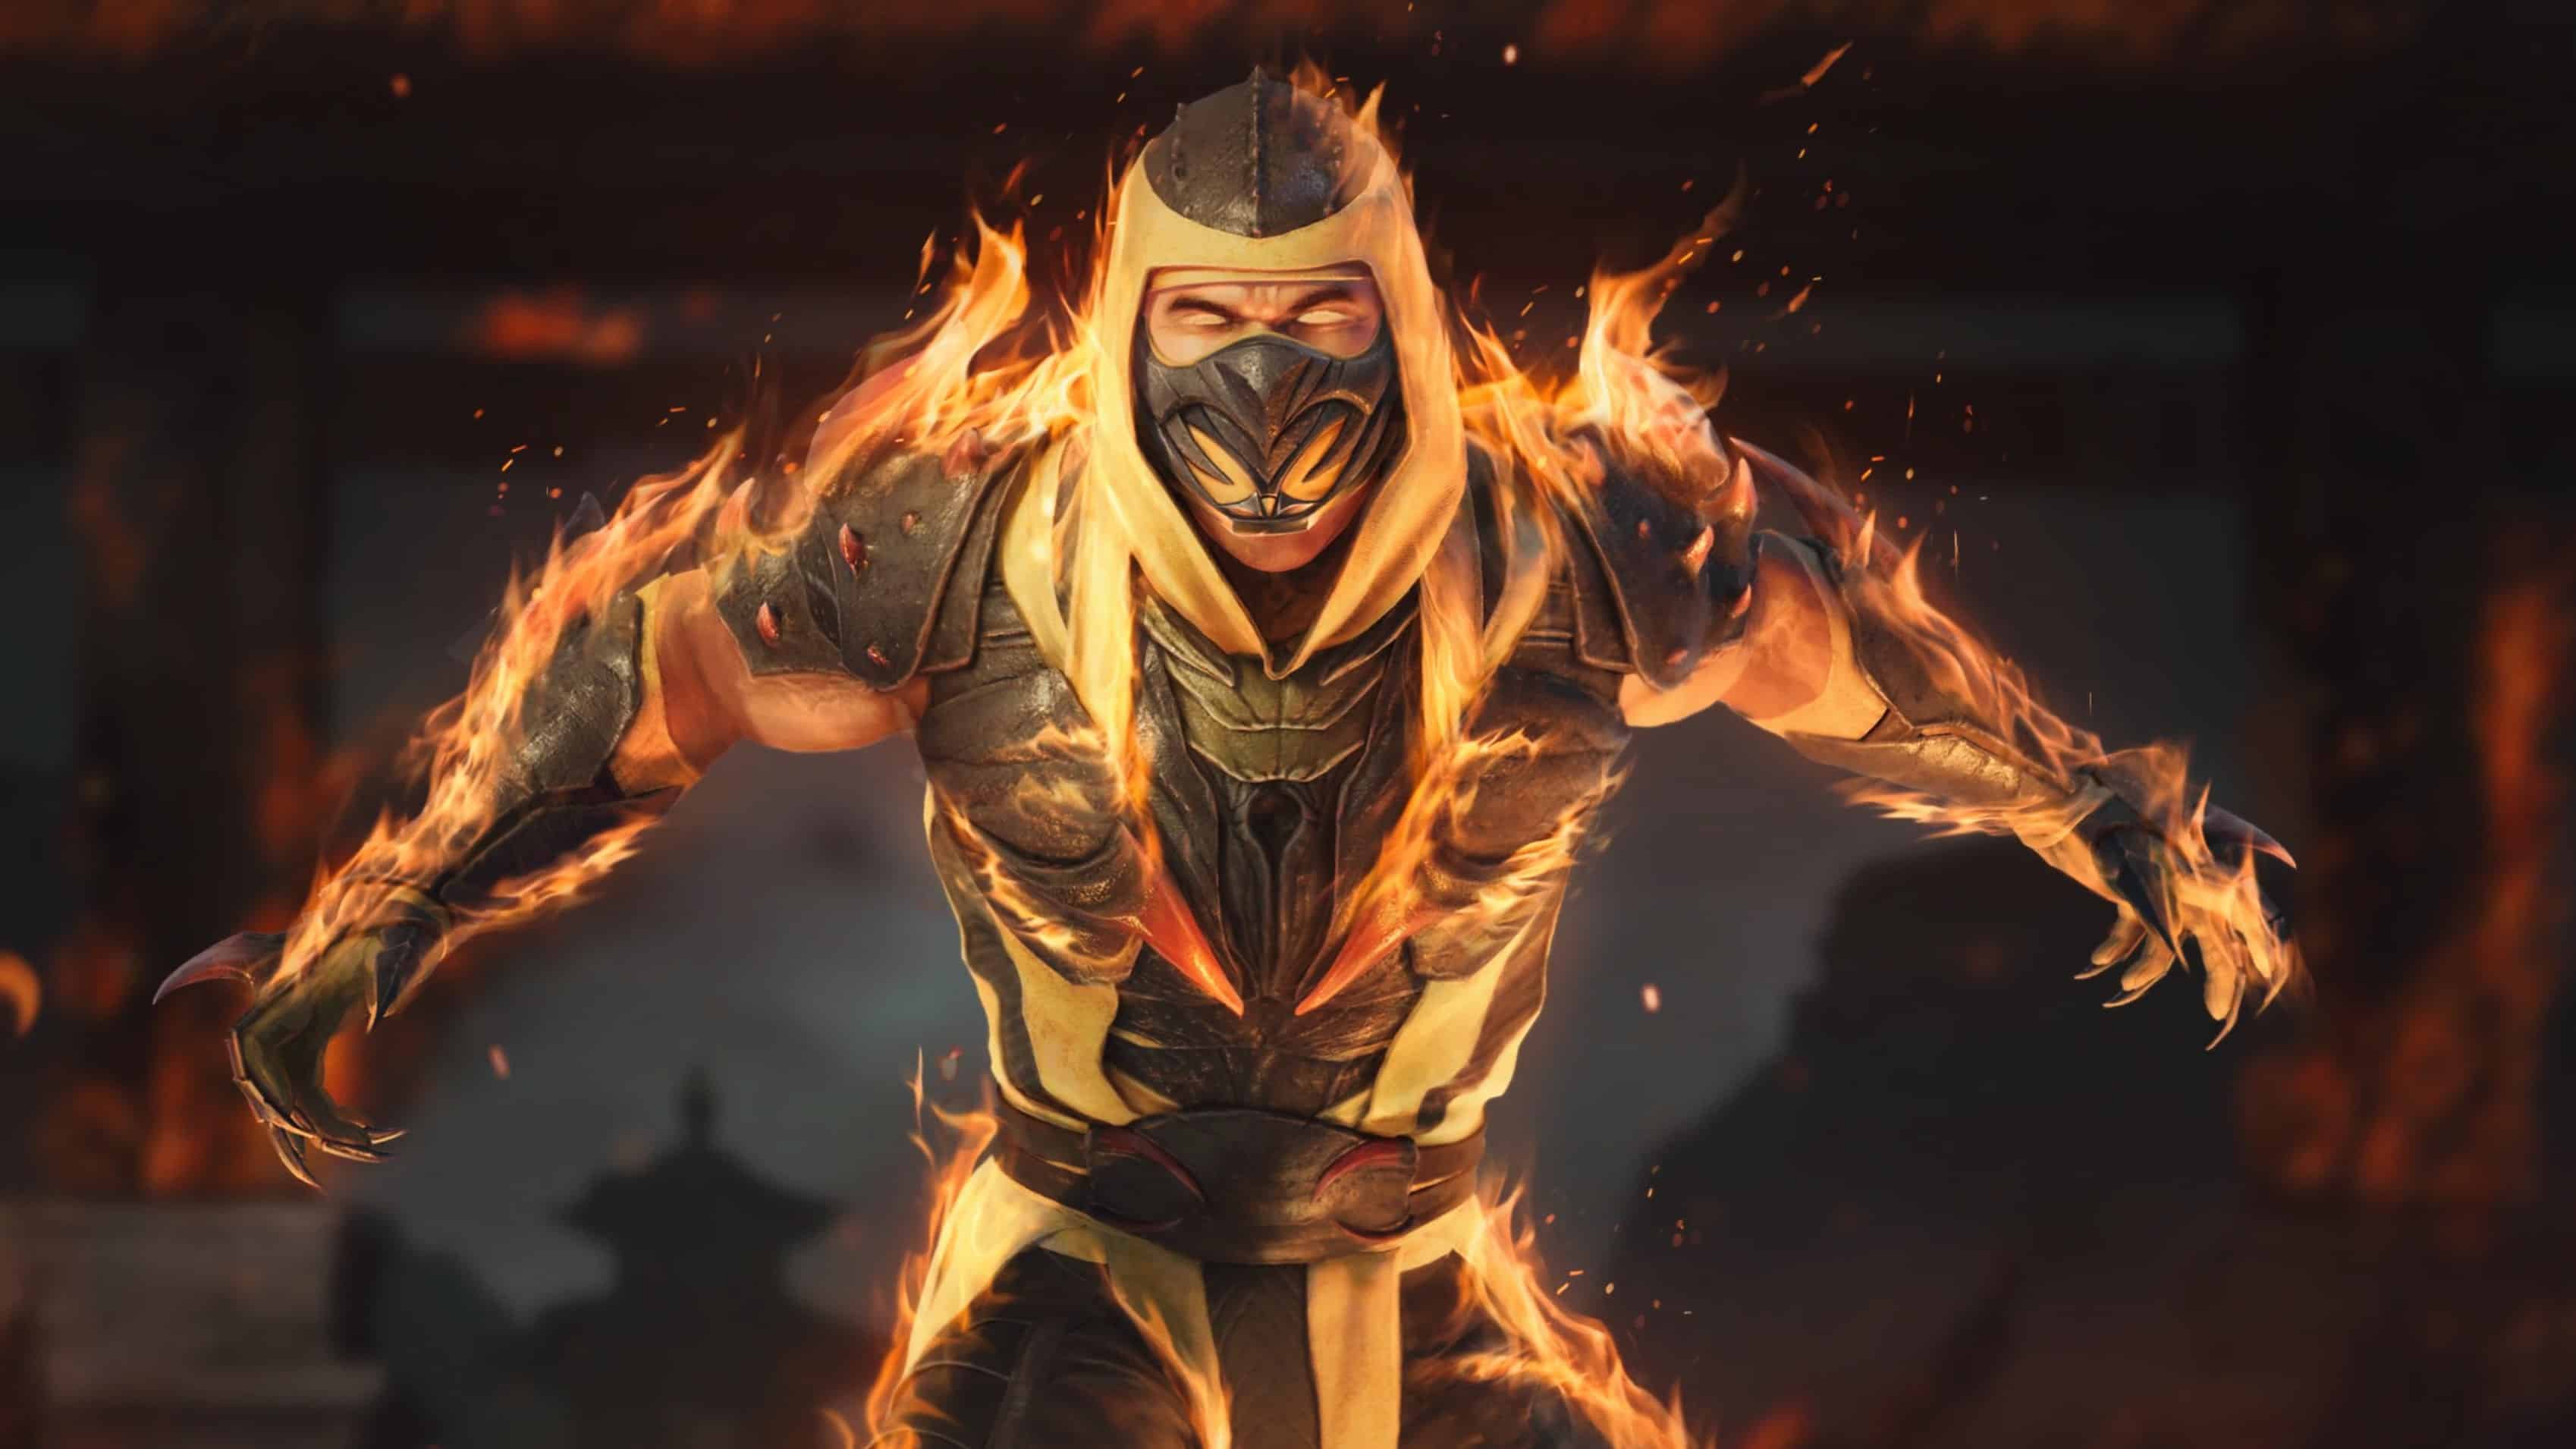 Mortal Kombat 1 FAQ – Mortal Kombat Games